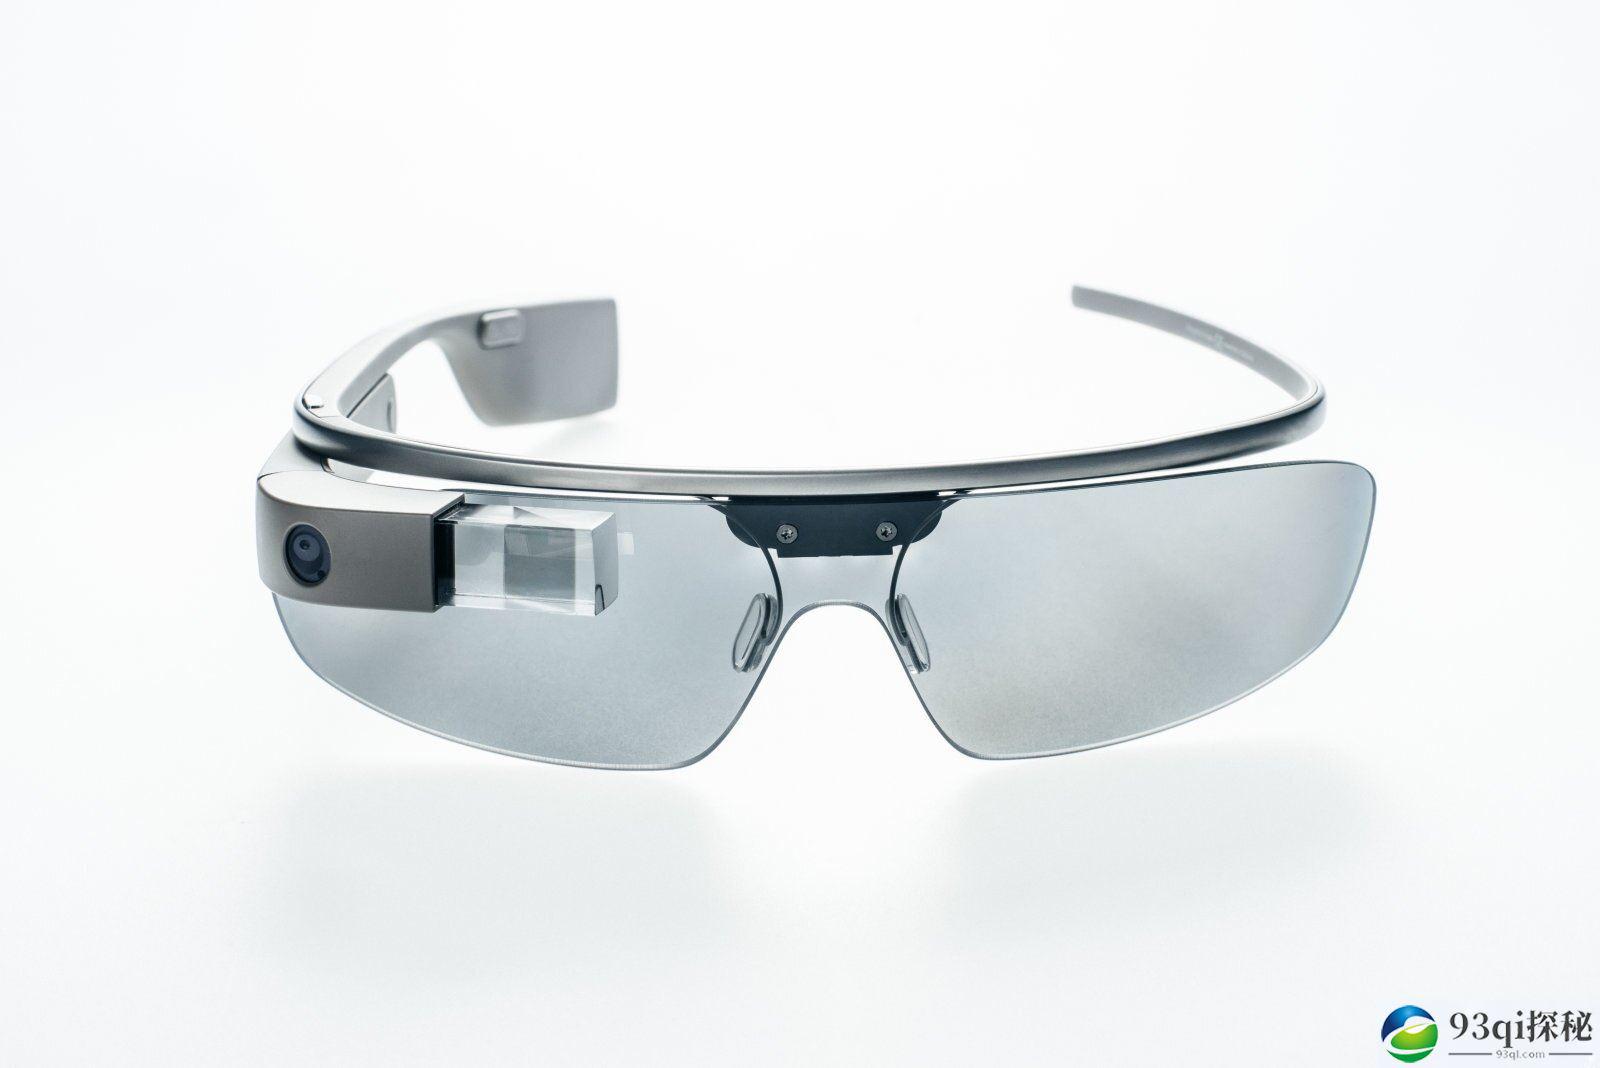 研究人员使用 Google Glass 来协助自闭症儿童改善社交困境